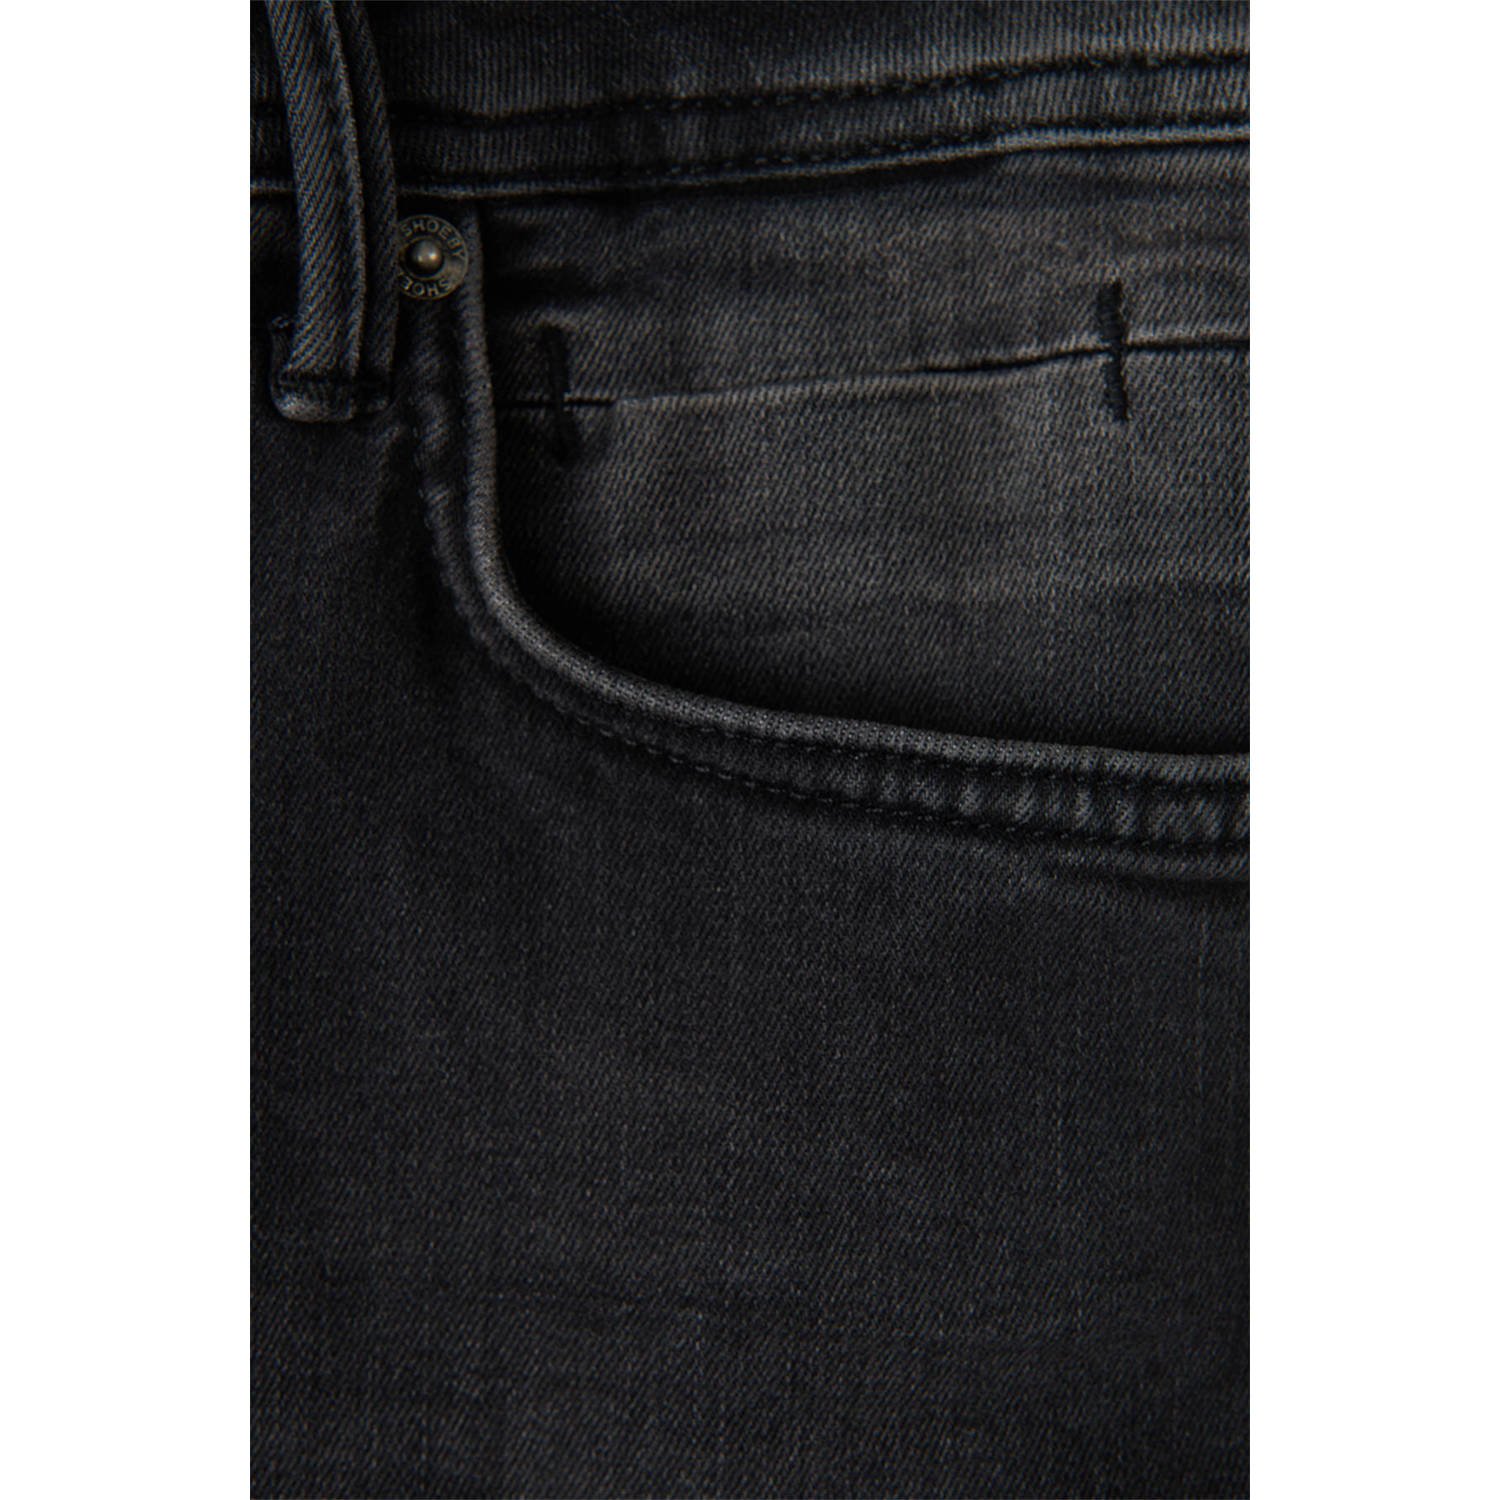 Shoeby slim fit L34 jeans Lucas Jack black denim